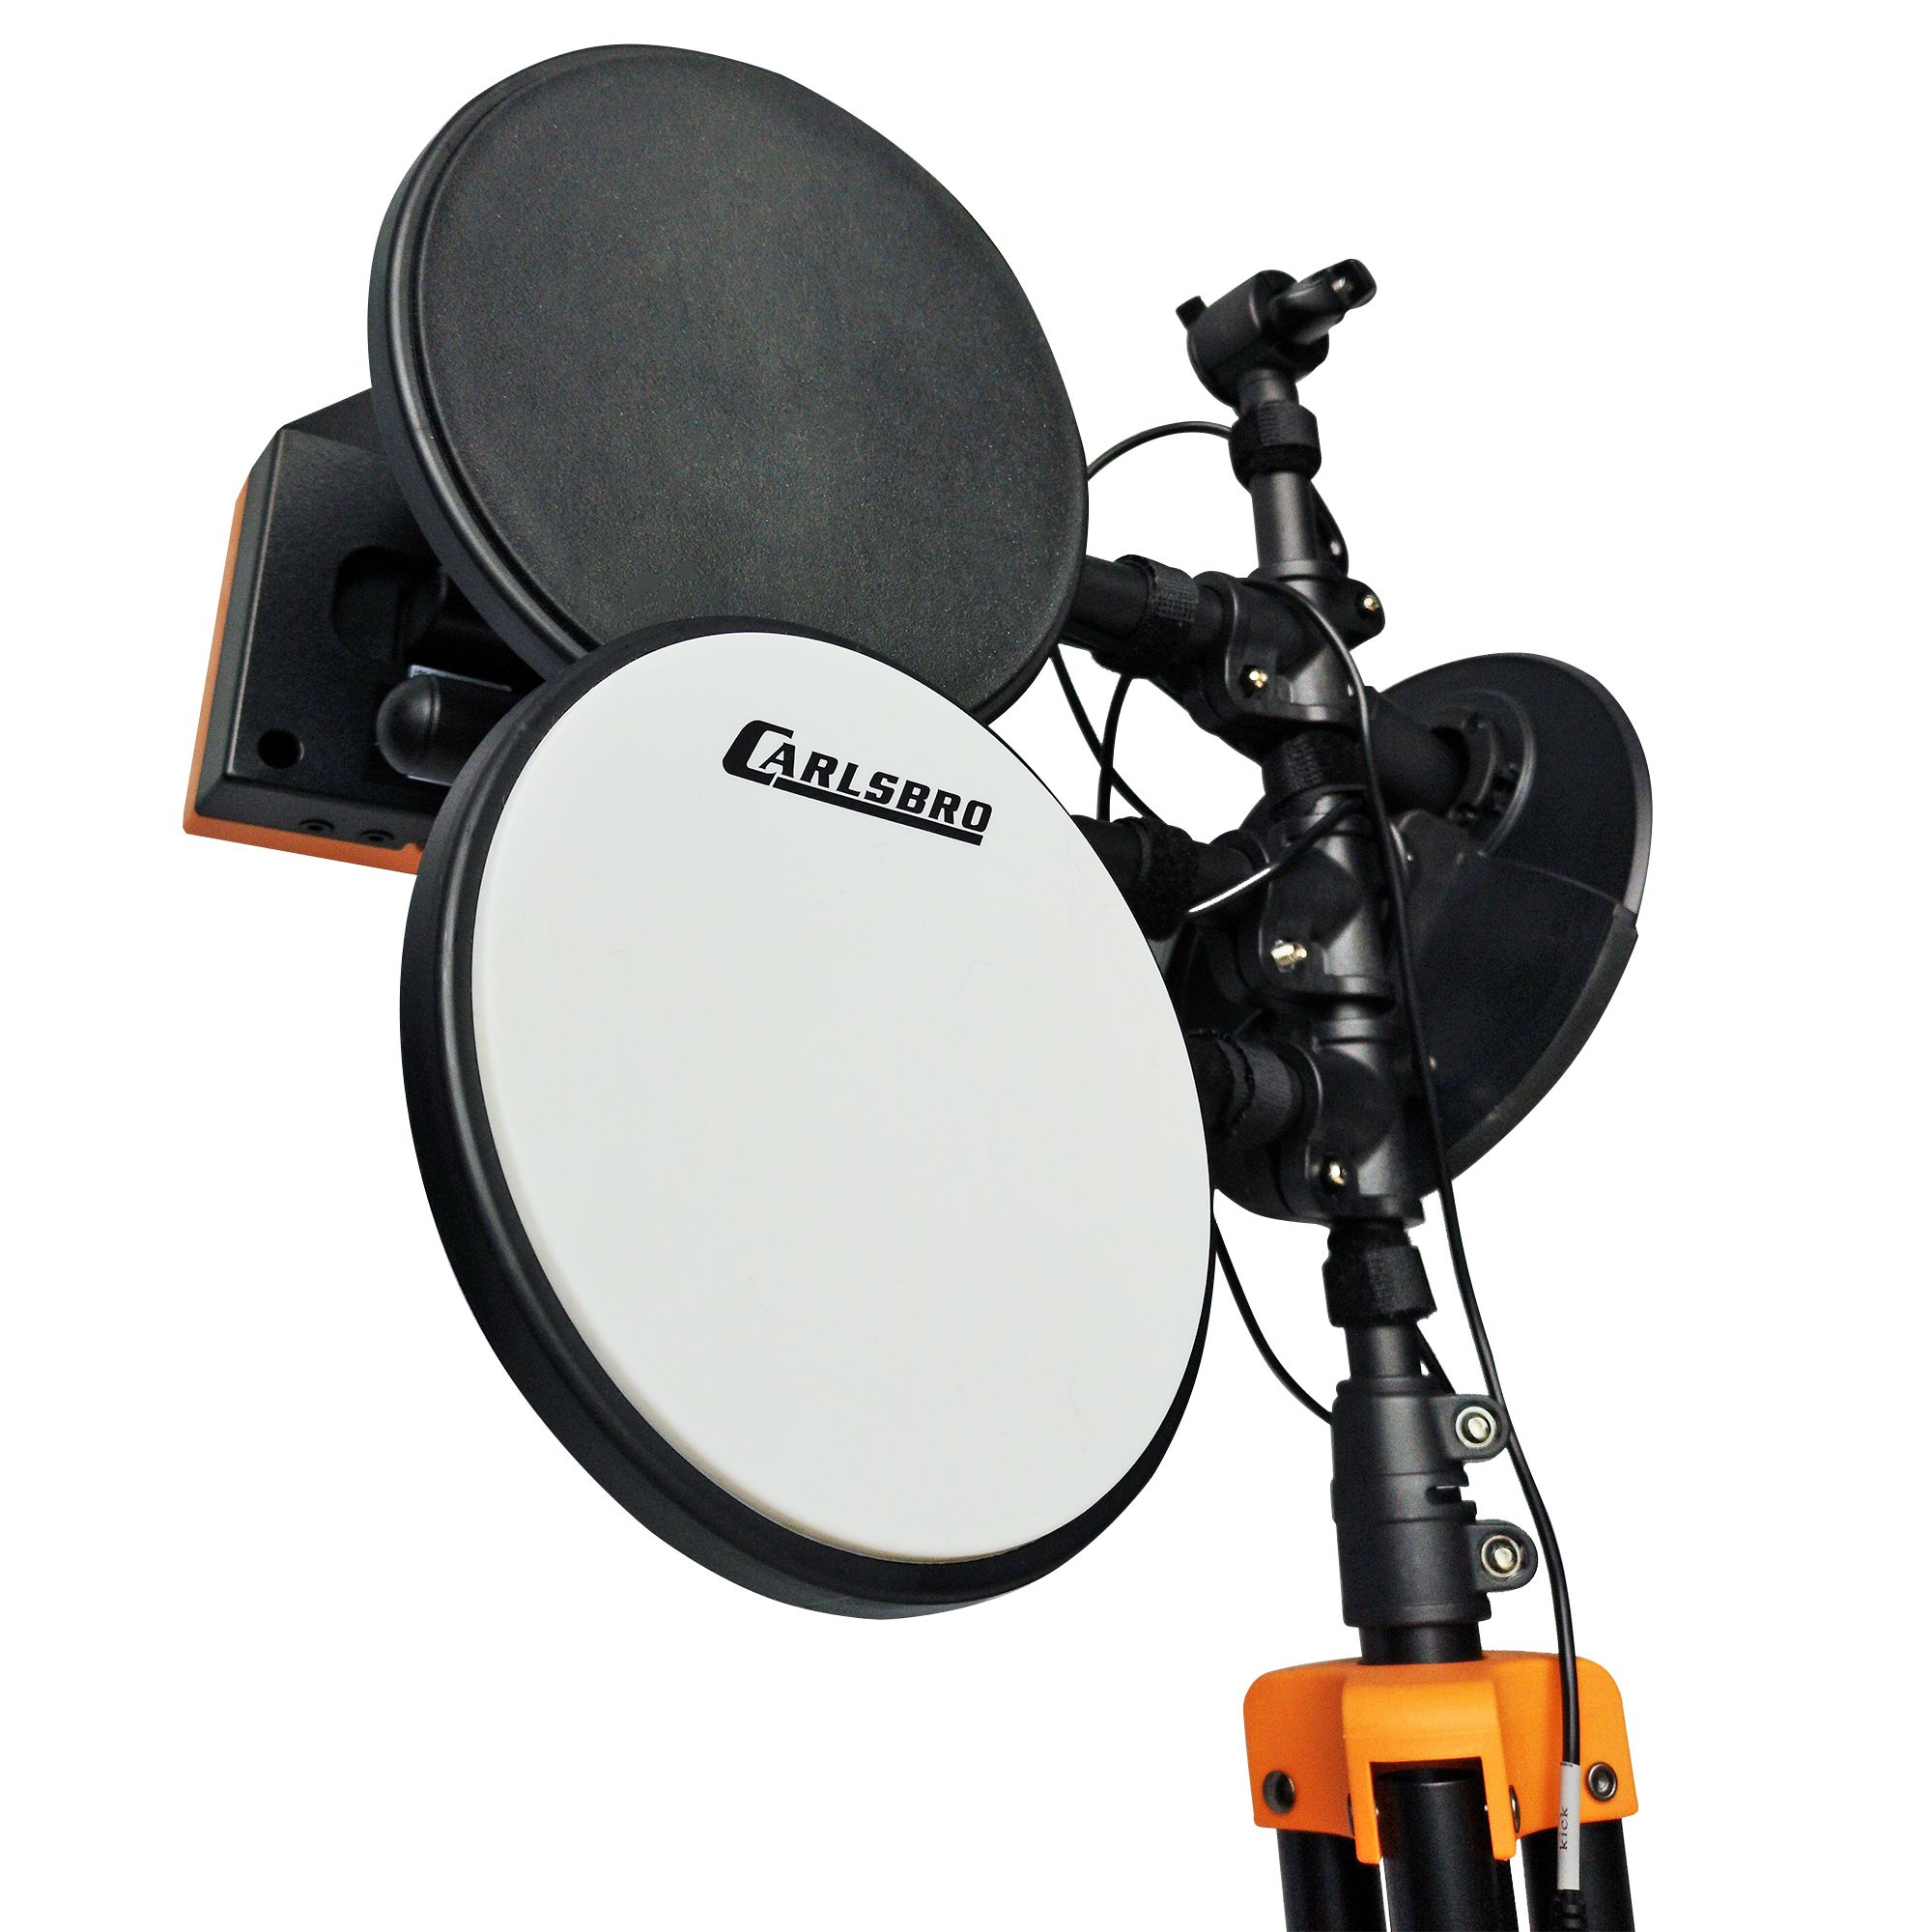 Carlsbro rock50bp1 elektrisch drumstel incl. Drumkruk en koptelefoon 2